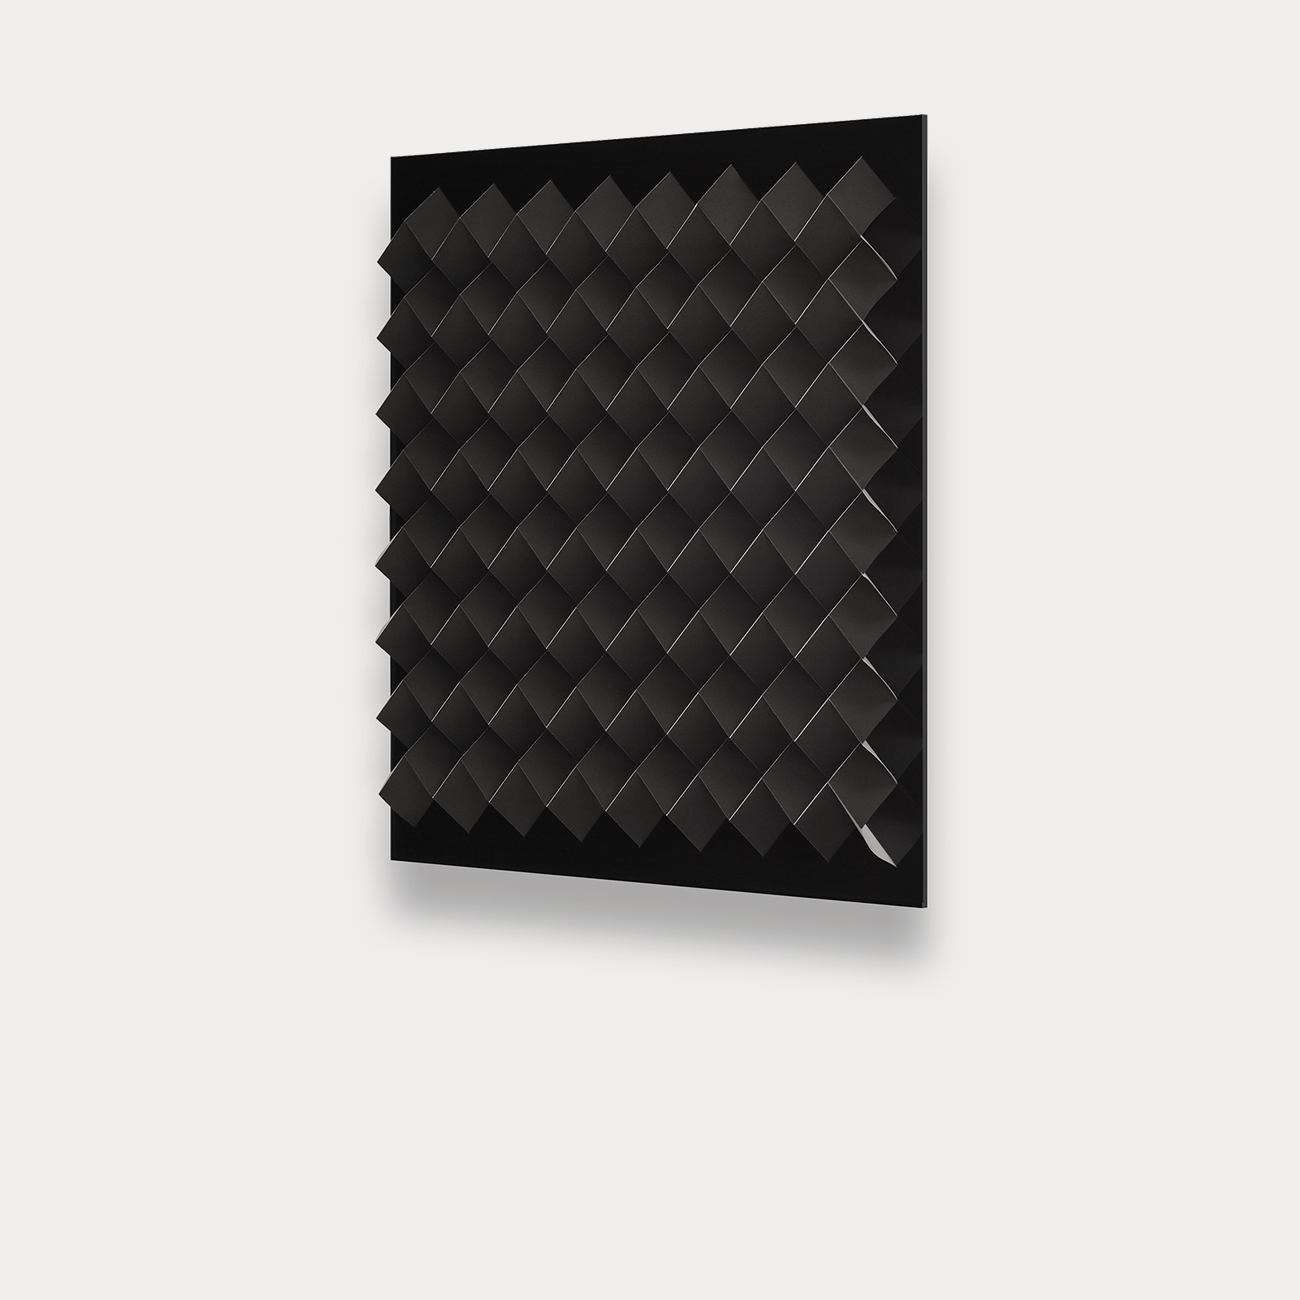 Foldart Paperfold schwarz-weiß. Seitenansicht. Basis Acryl, schwarz